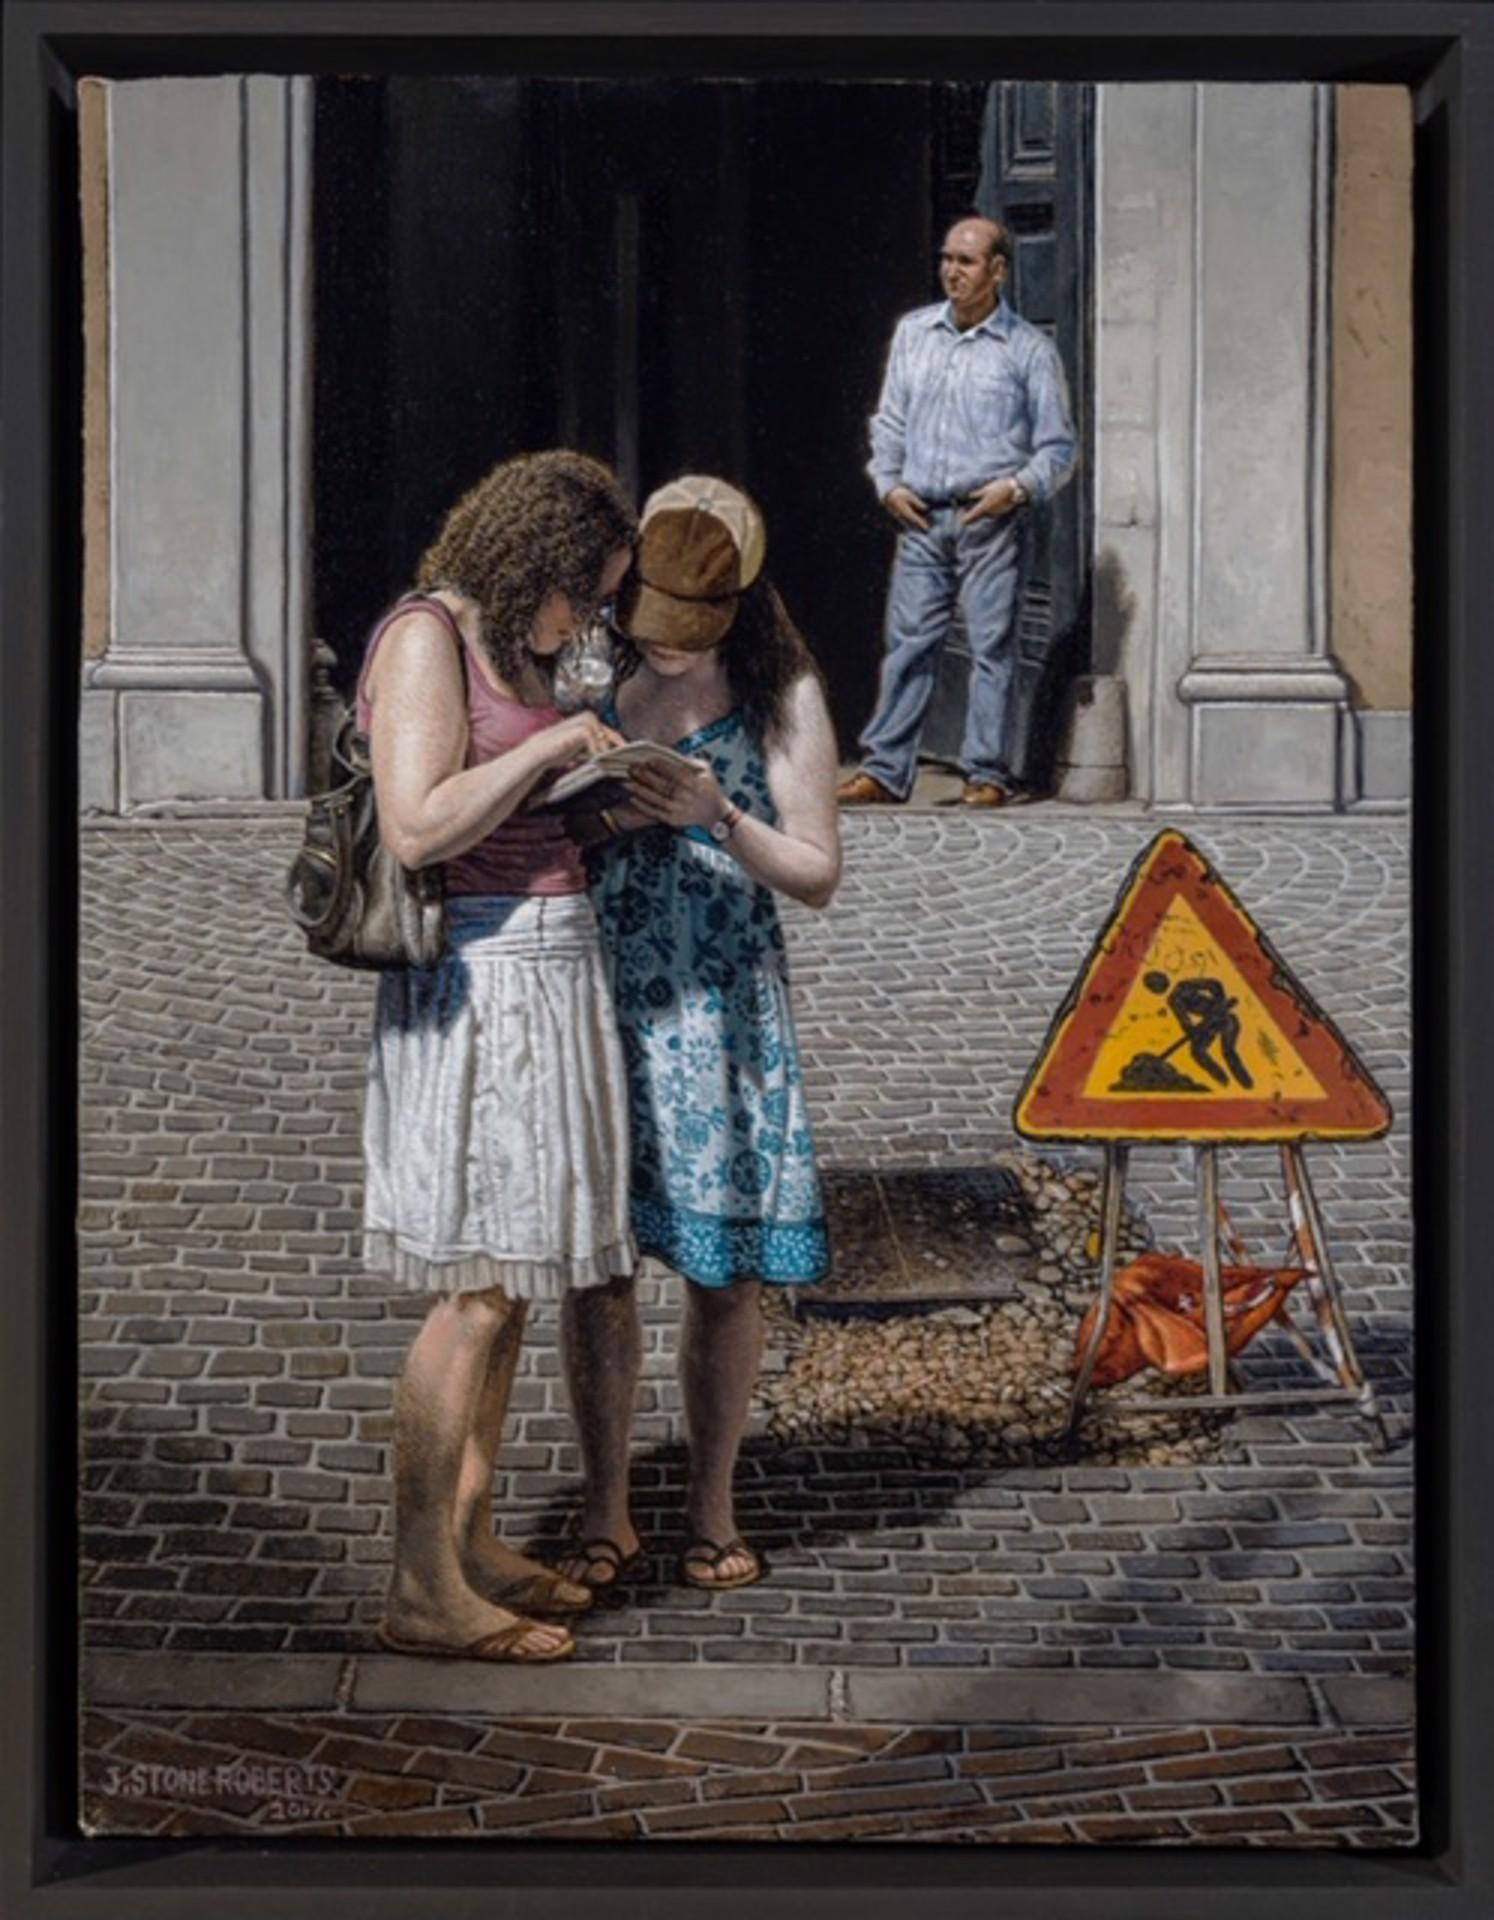 Figurative Painting Stone Roberts - Rome, Italie, paysage urbain figuratif réaliste de deux filles et d'un homme dans une rue romaine